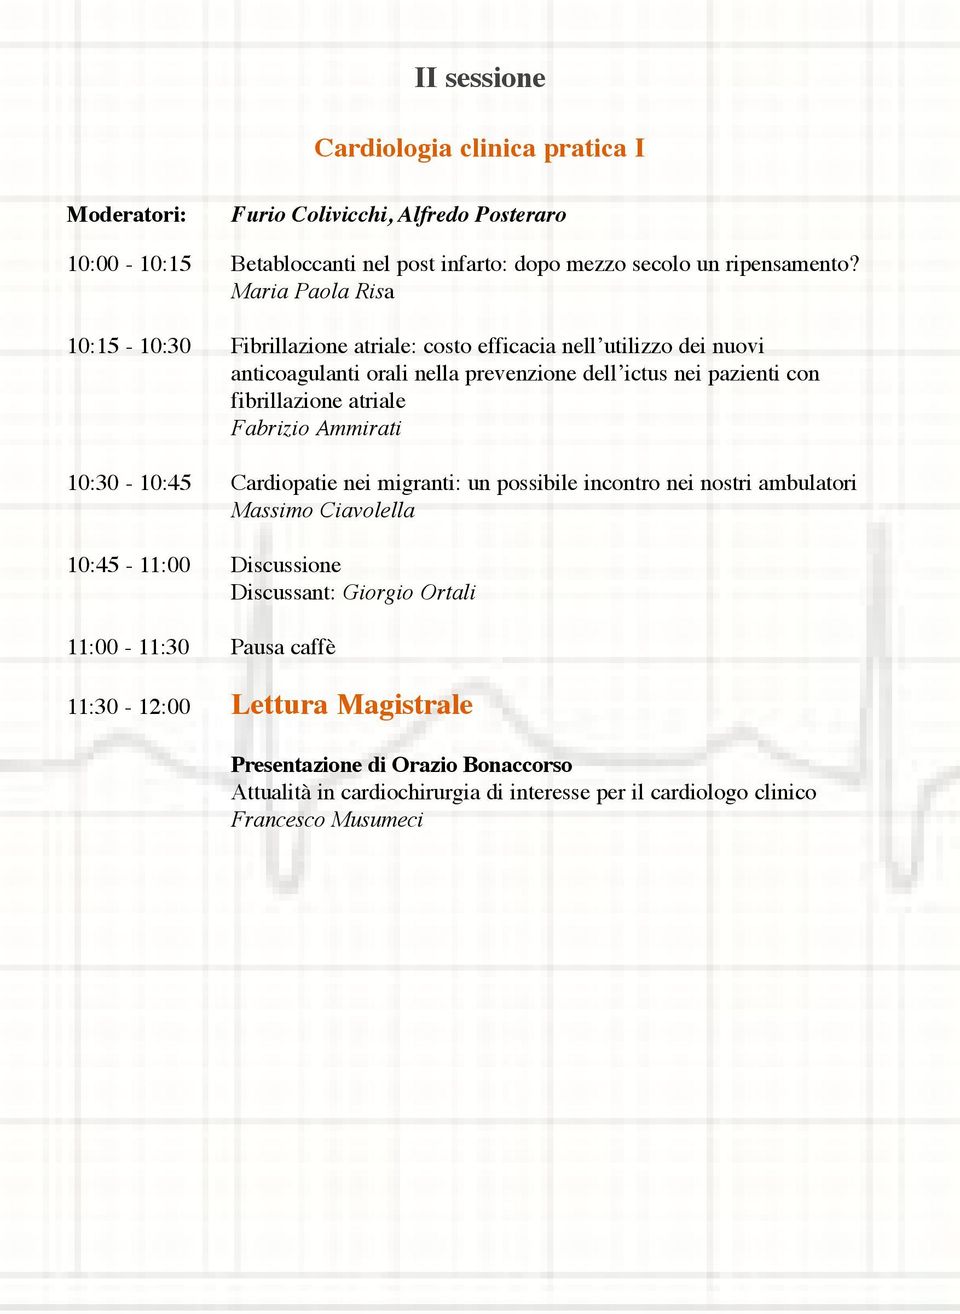 fibrillazione atriale Fabrizio Ammirati 10:30-10:45 Cardiopatie nei migranti: un possibile incontro nei nostri ambulatori Massimo Ciavolella 10:45-11:00 Discussione